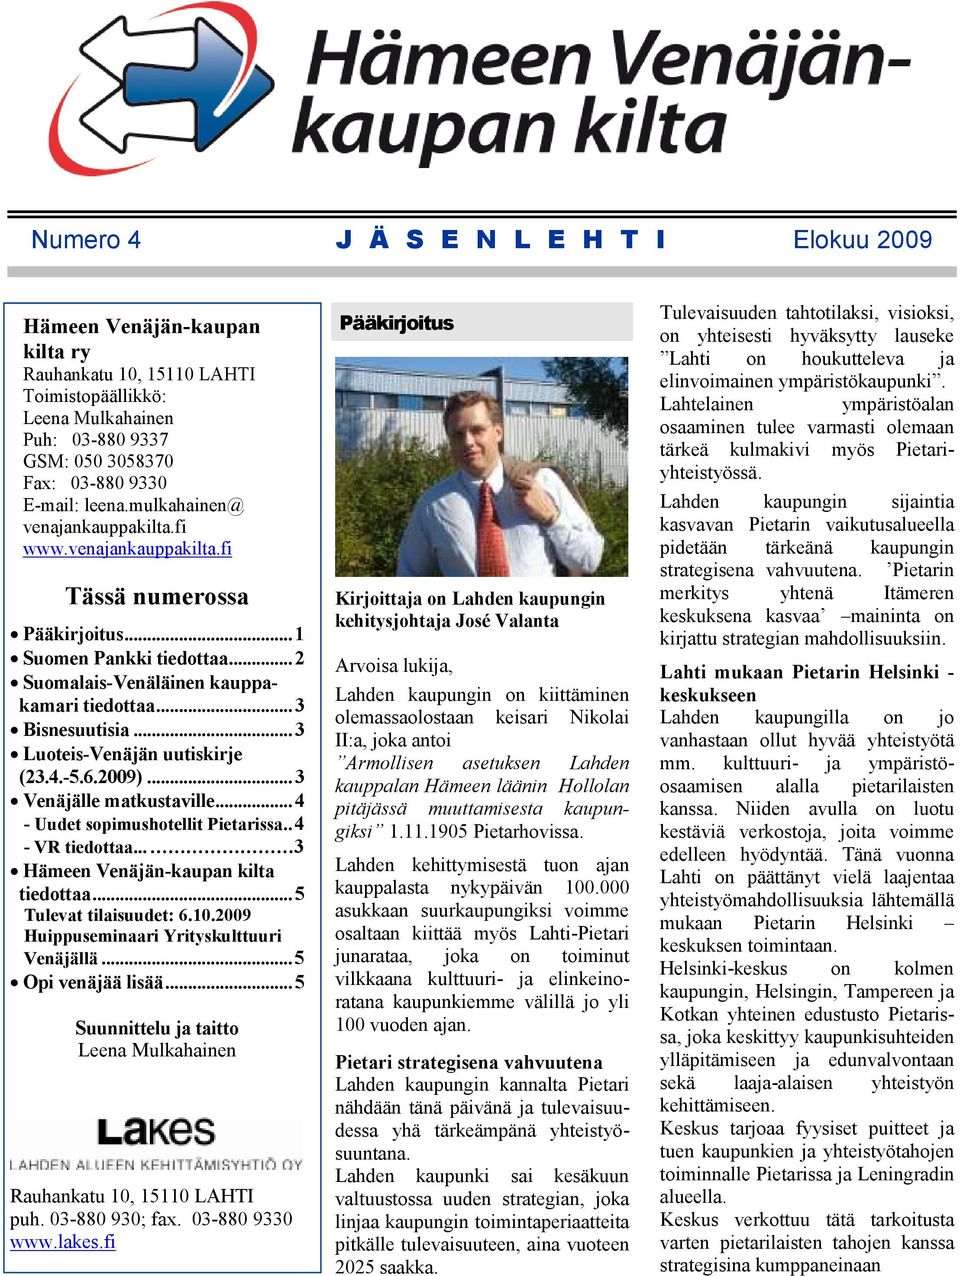 .. 3 Luoteis-Venäjän uutiskirje (23.4.-5.6.2009)... 3 Venäjälle matkustaville... 4 - Uudet sopimushotellit Pietarissa.. 4 - VR tiedottaa... 3 Hämeen Venäjän-kaupan kilta tiedottaa.